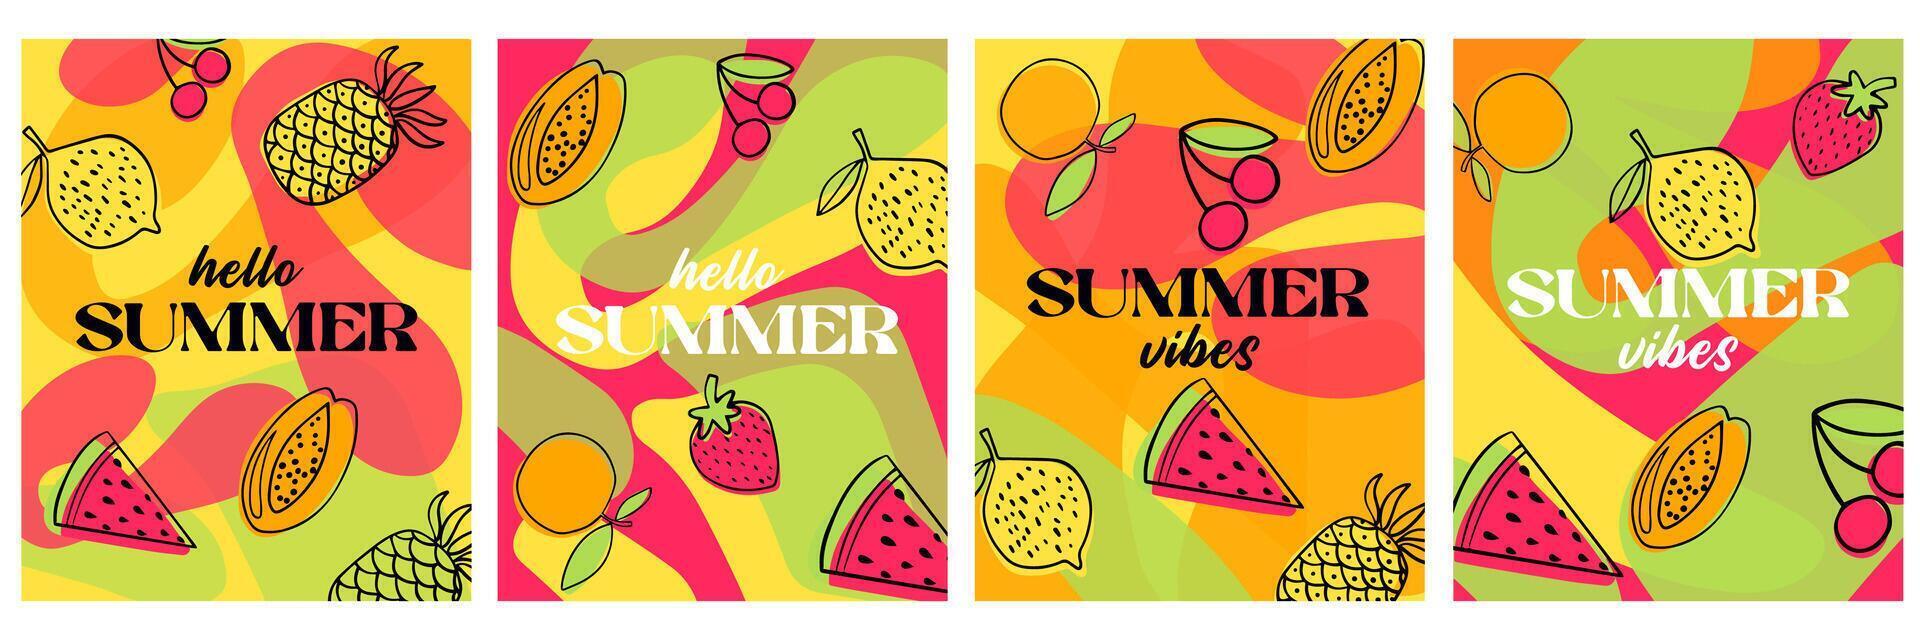 Hola verano, verano vibraciones vistoso bandera diseño. creativo concepto para un conjunto de verano brillante y jugoso tarjetas vector